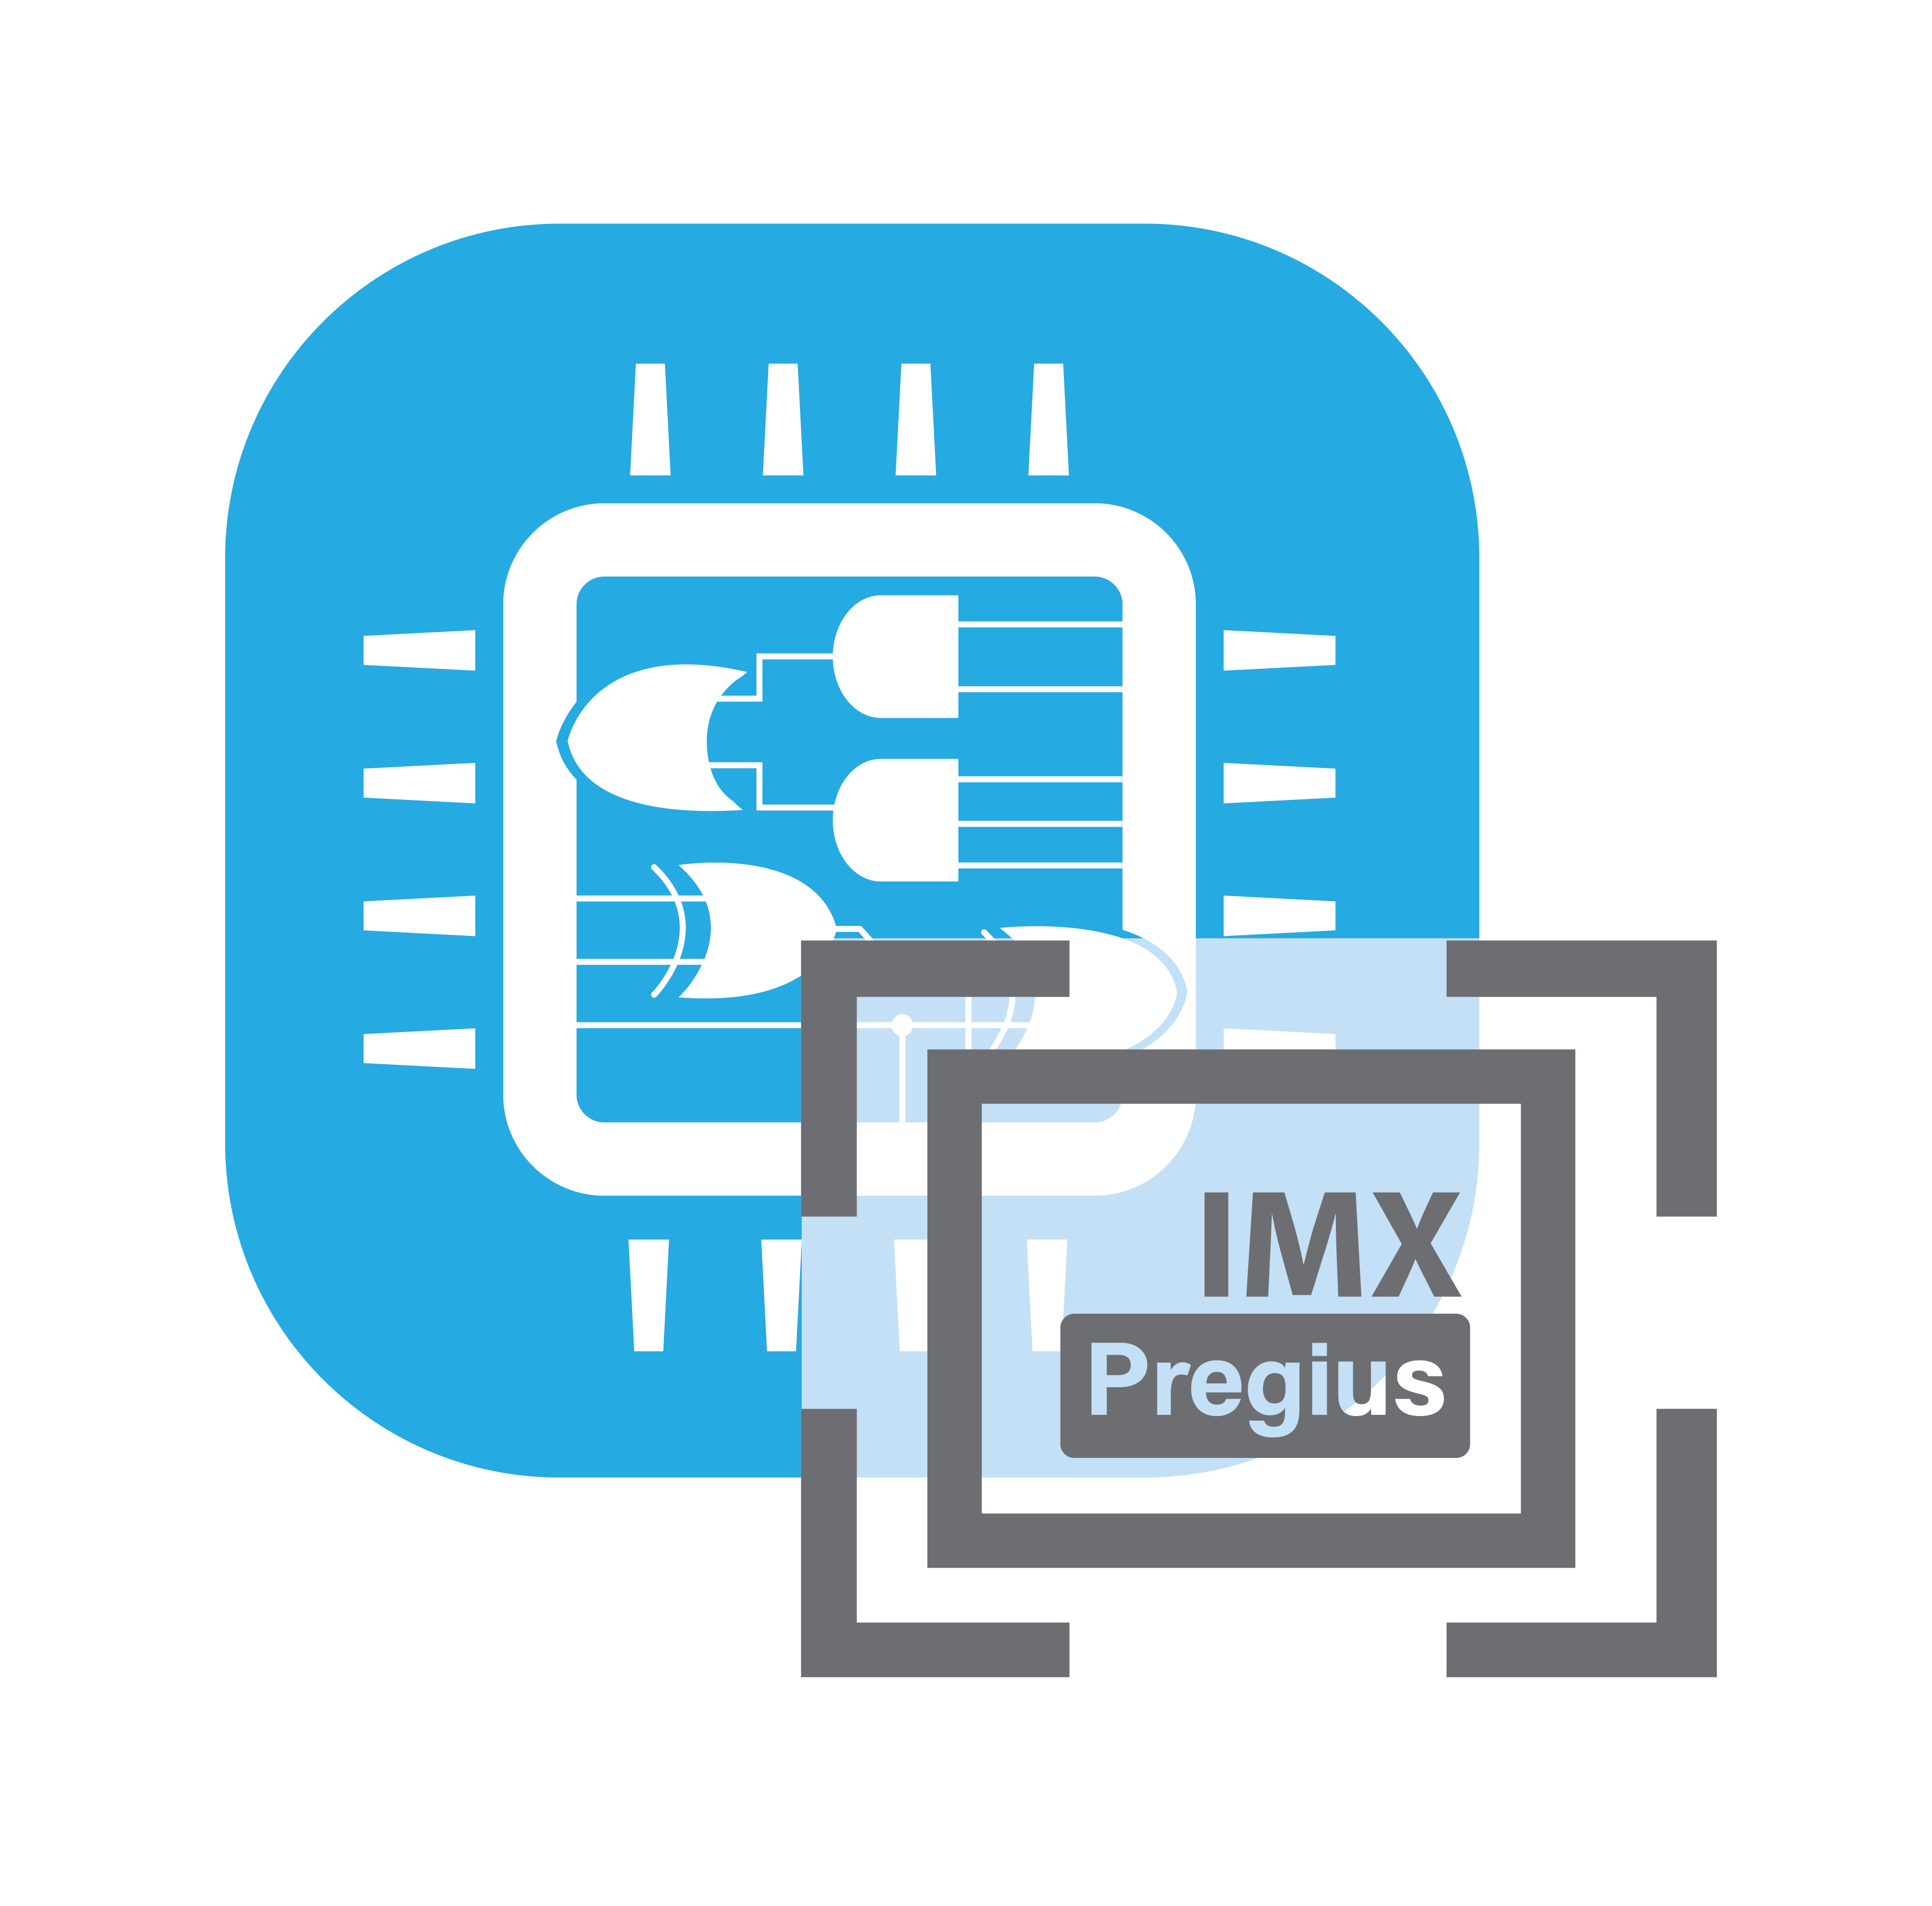 IMX Pregius IP Core